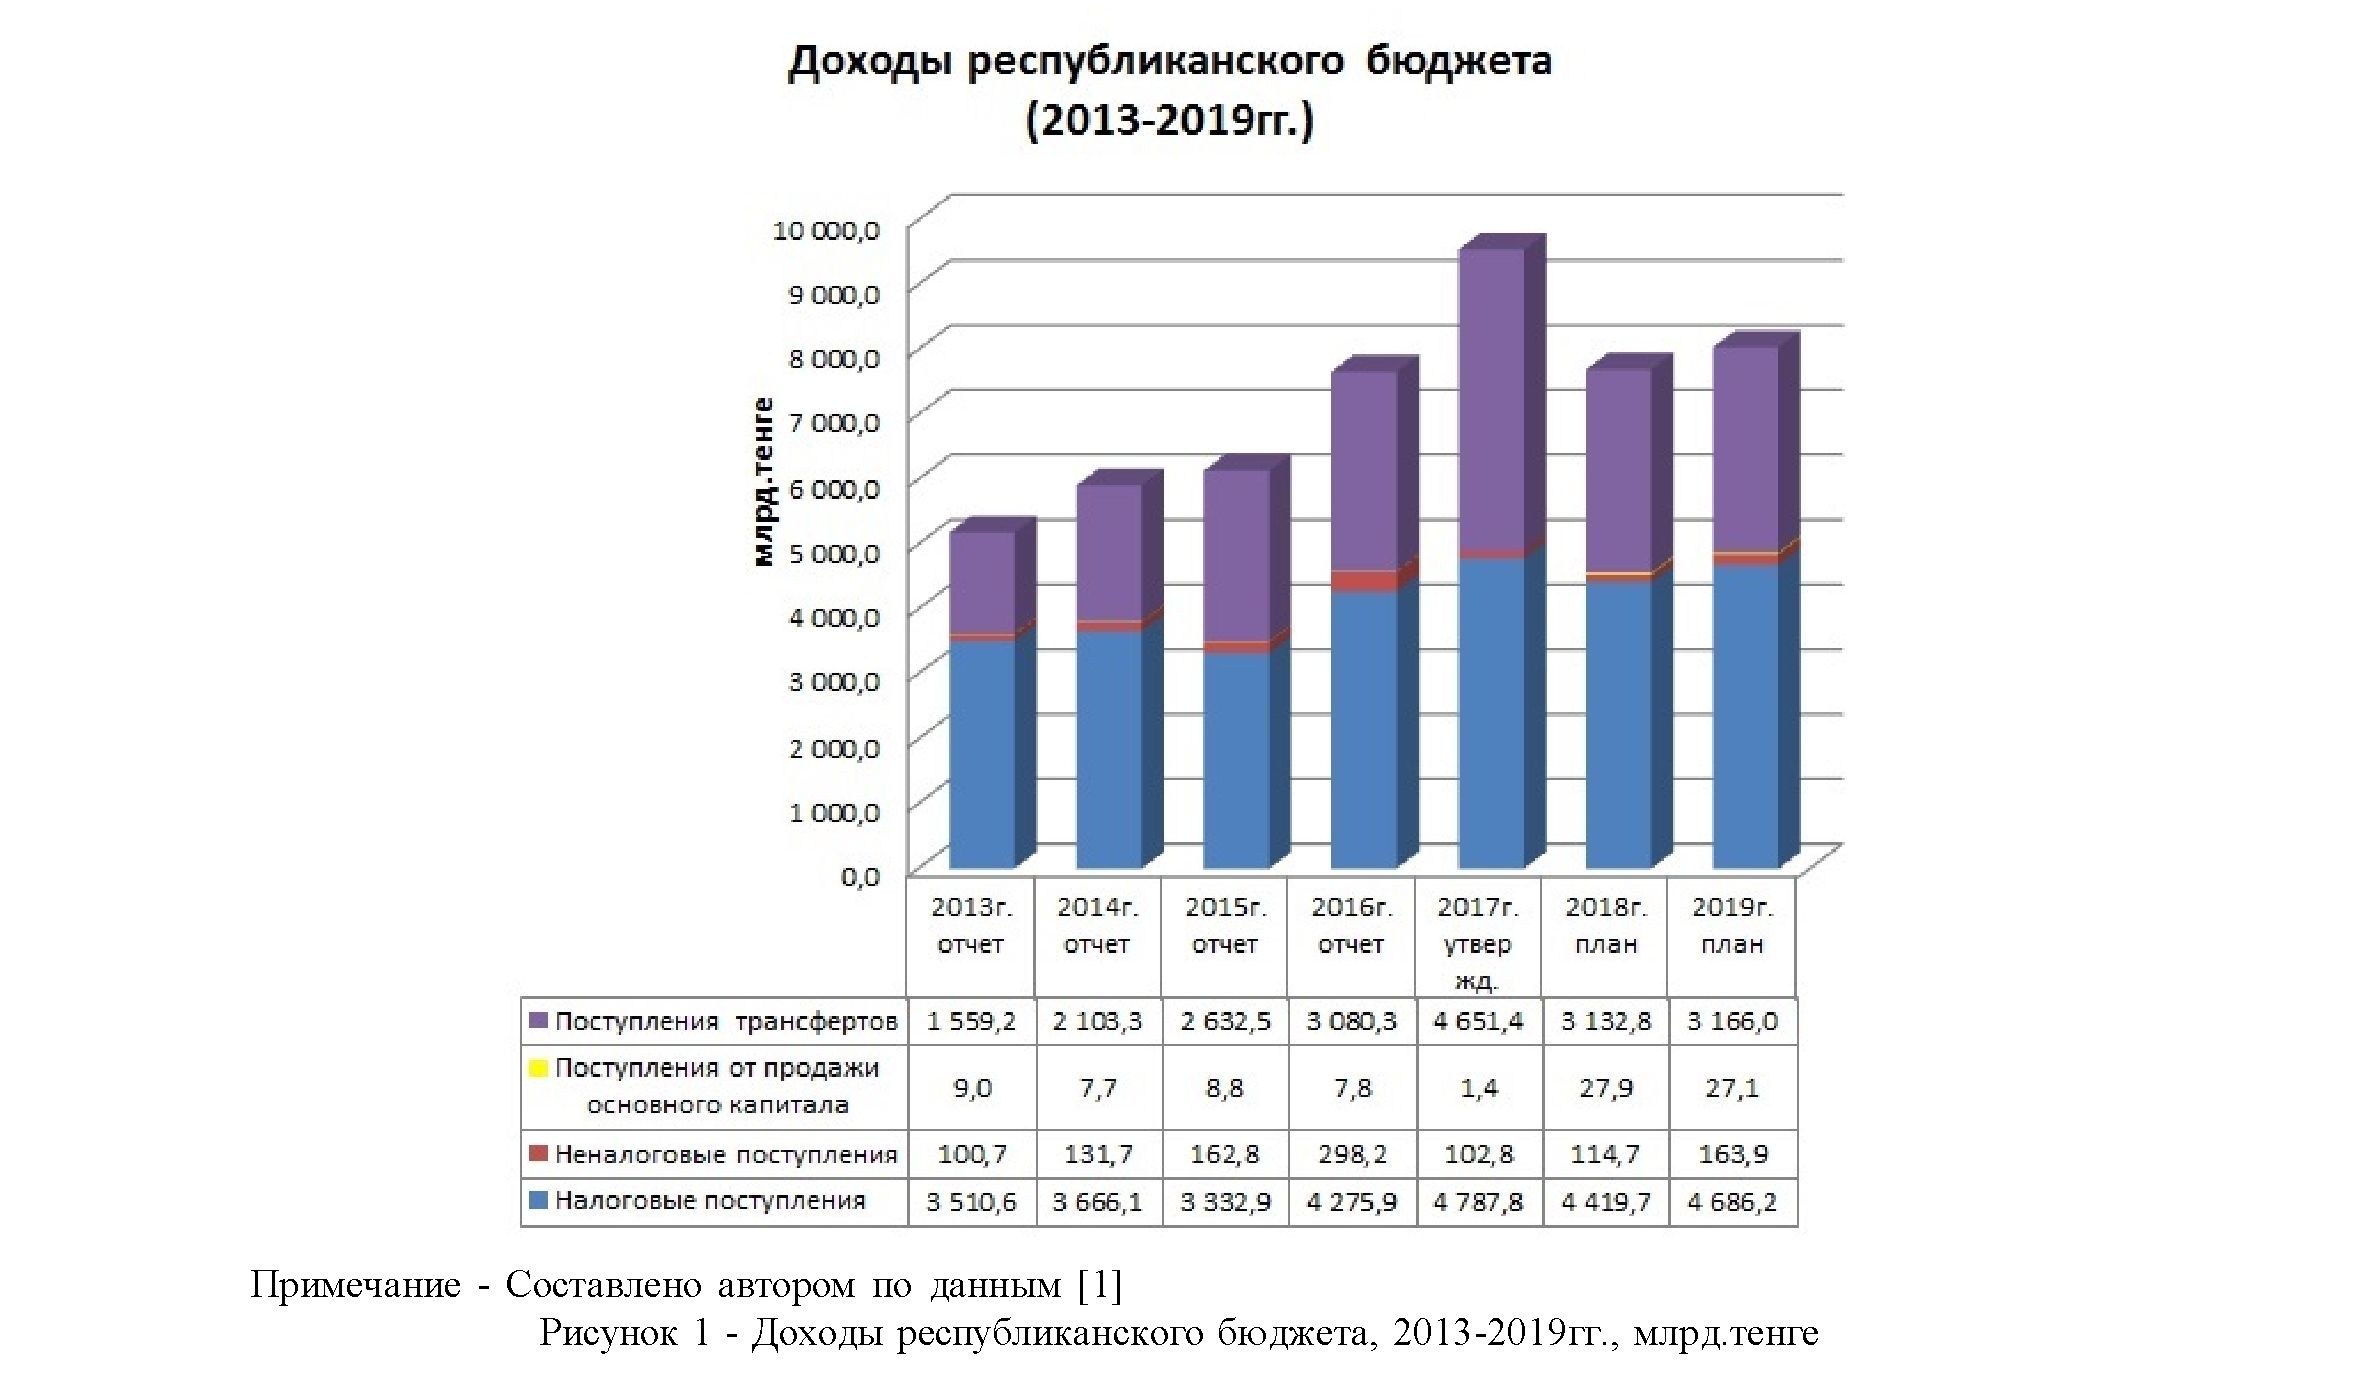 Государственные финансы республики Казахстан: актуальные задачи